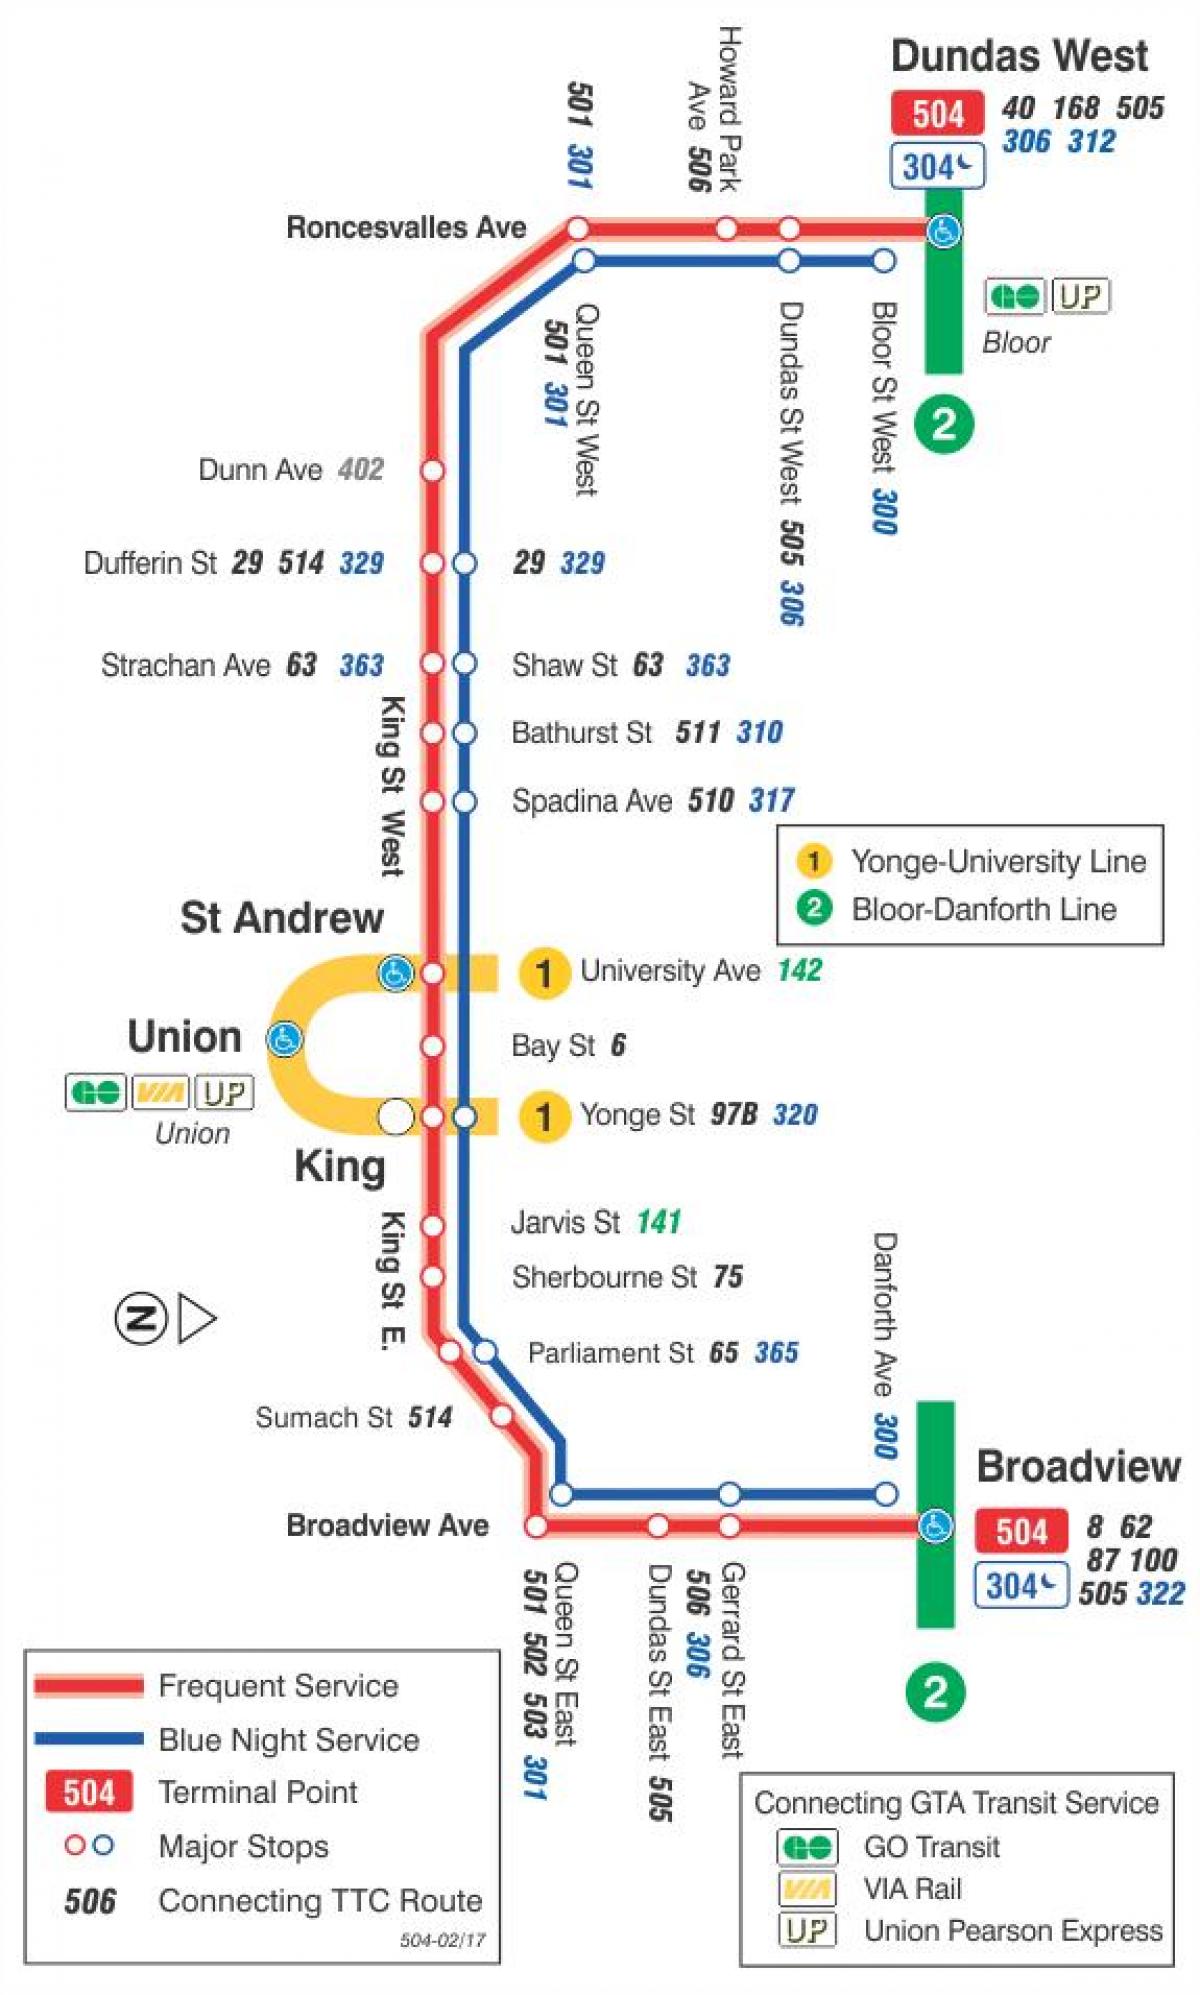 Anzeigen der Straßenbahn-Linie 504 König